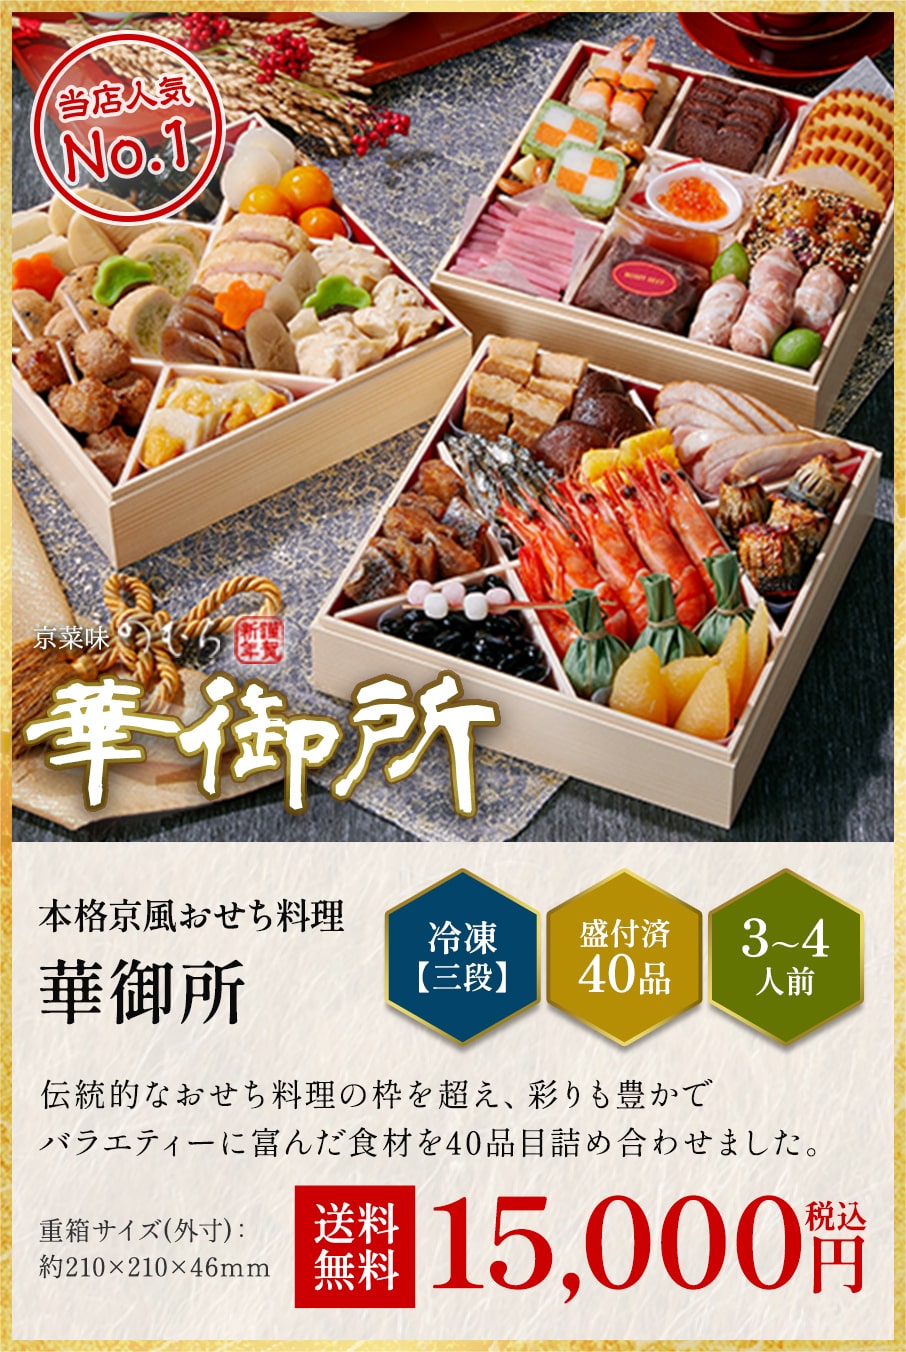 本格京風おせち料理「華御所」冷凍三段 盛付済み40品 3~4人前 15,000円